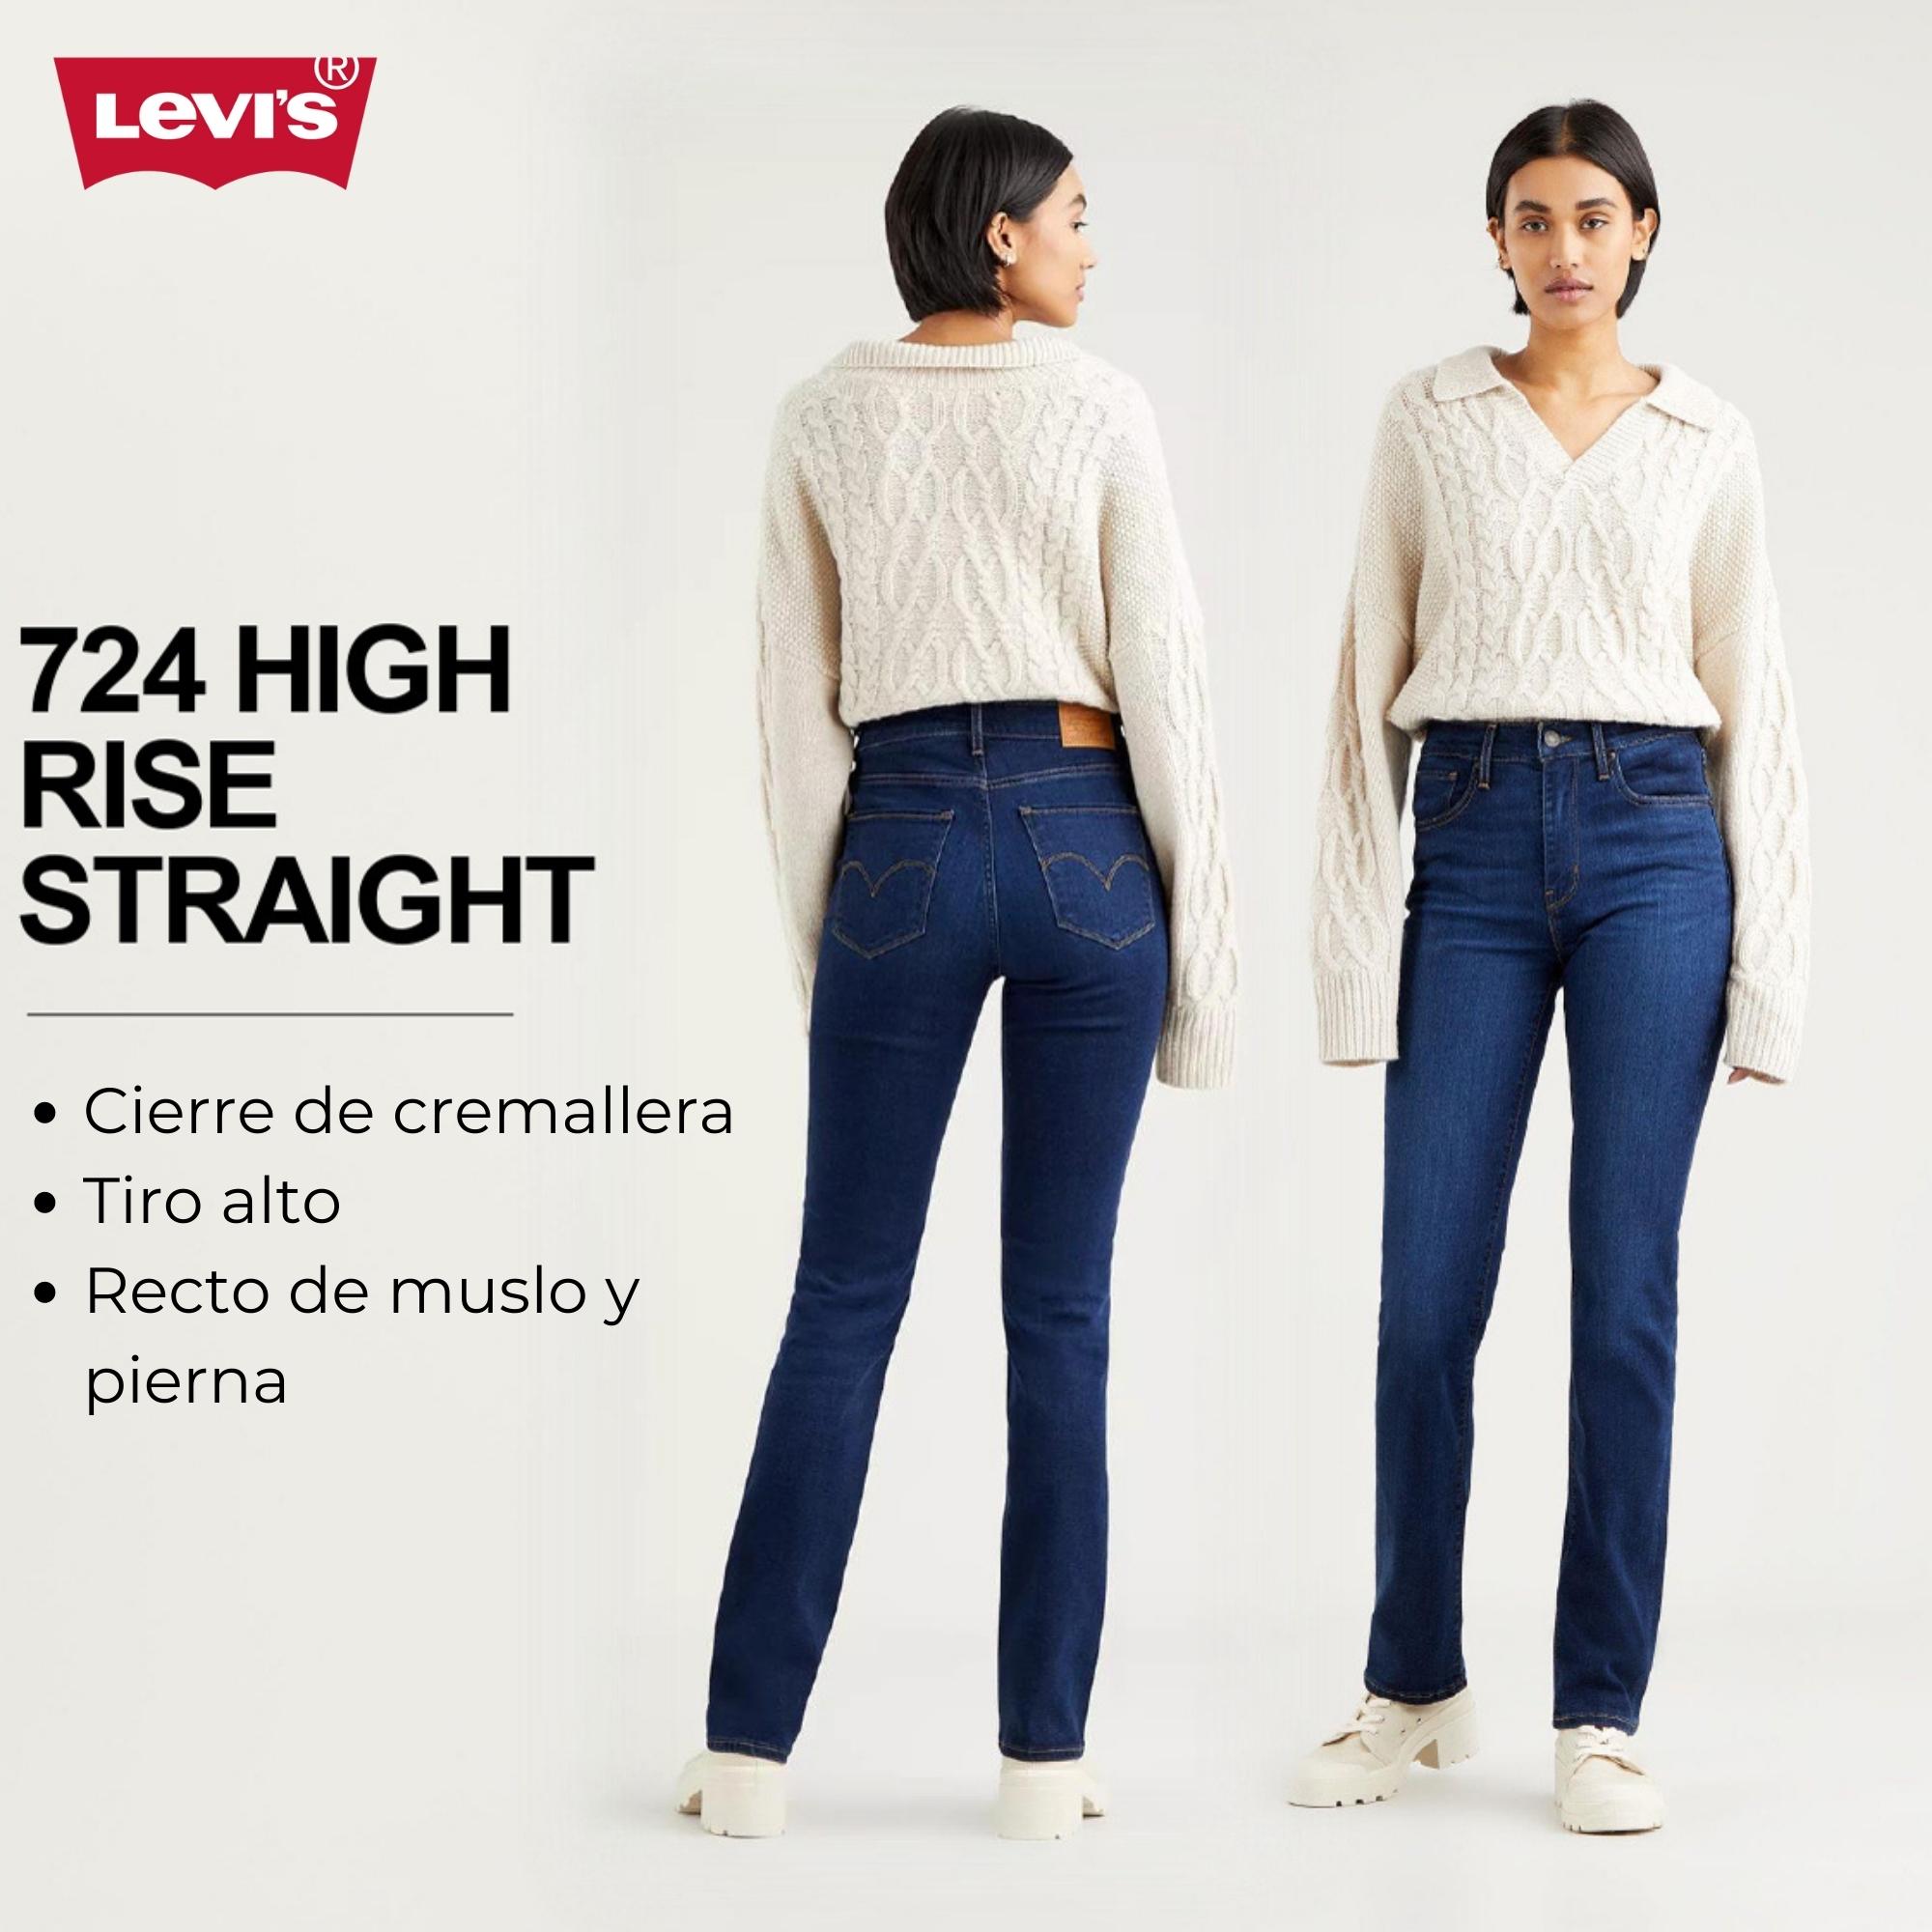 Principales modelos Levi's de pantalones vaqueros de mujer